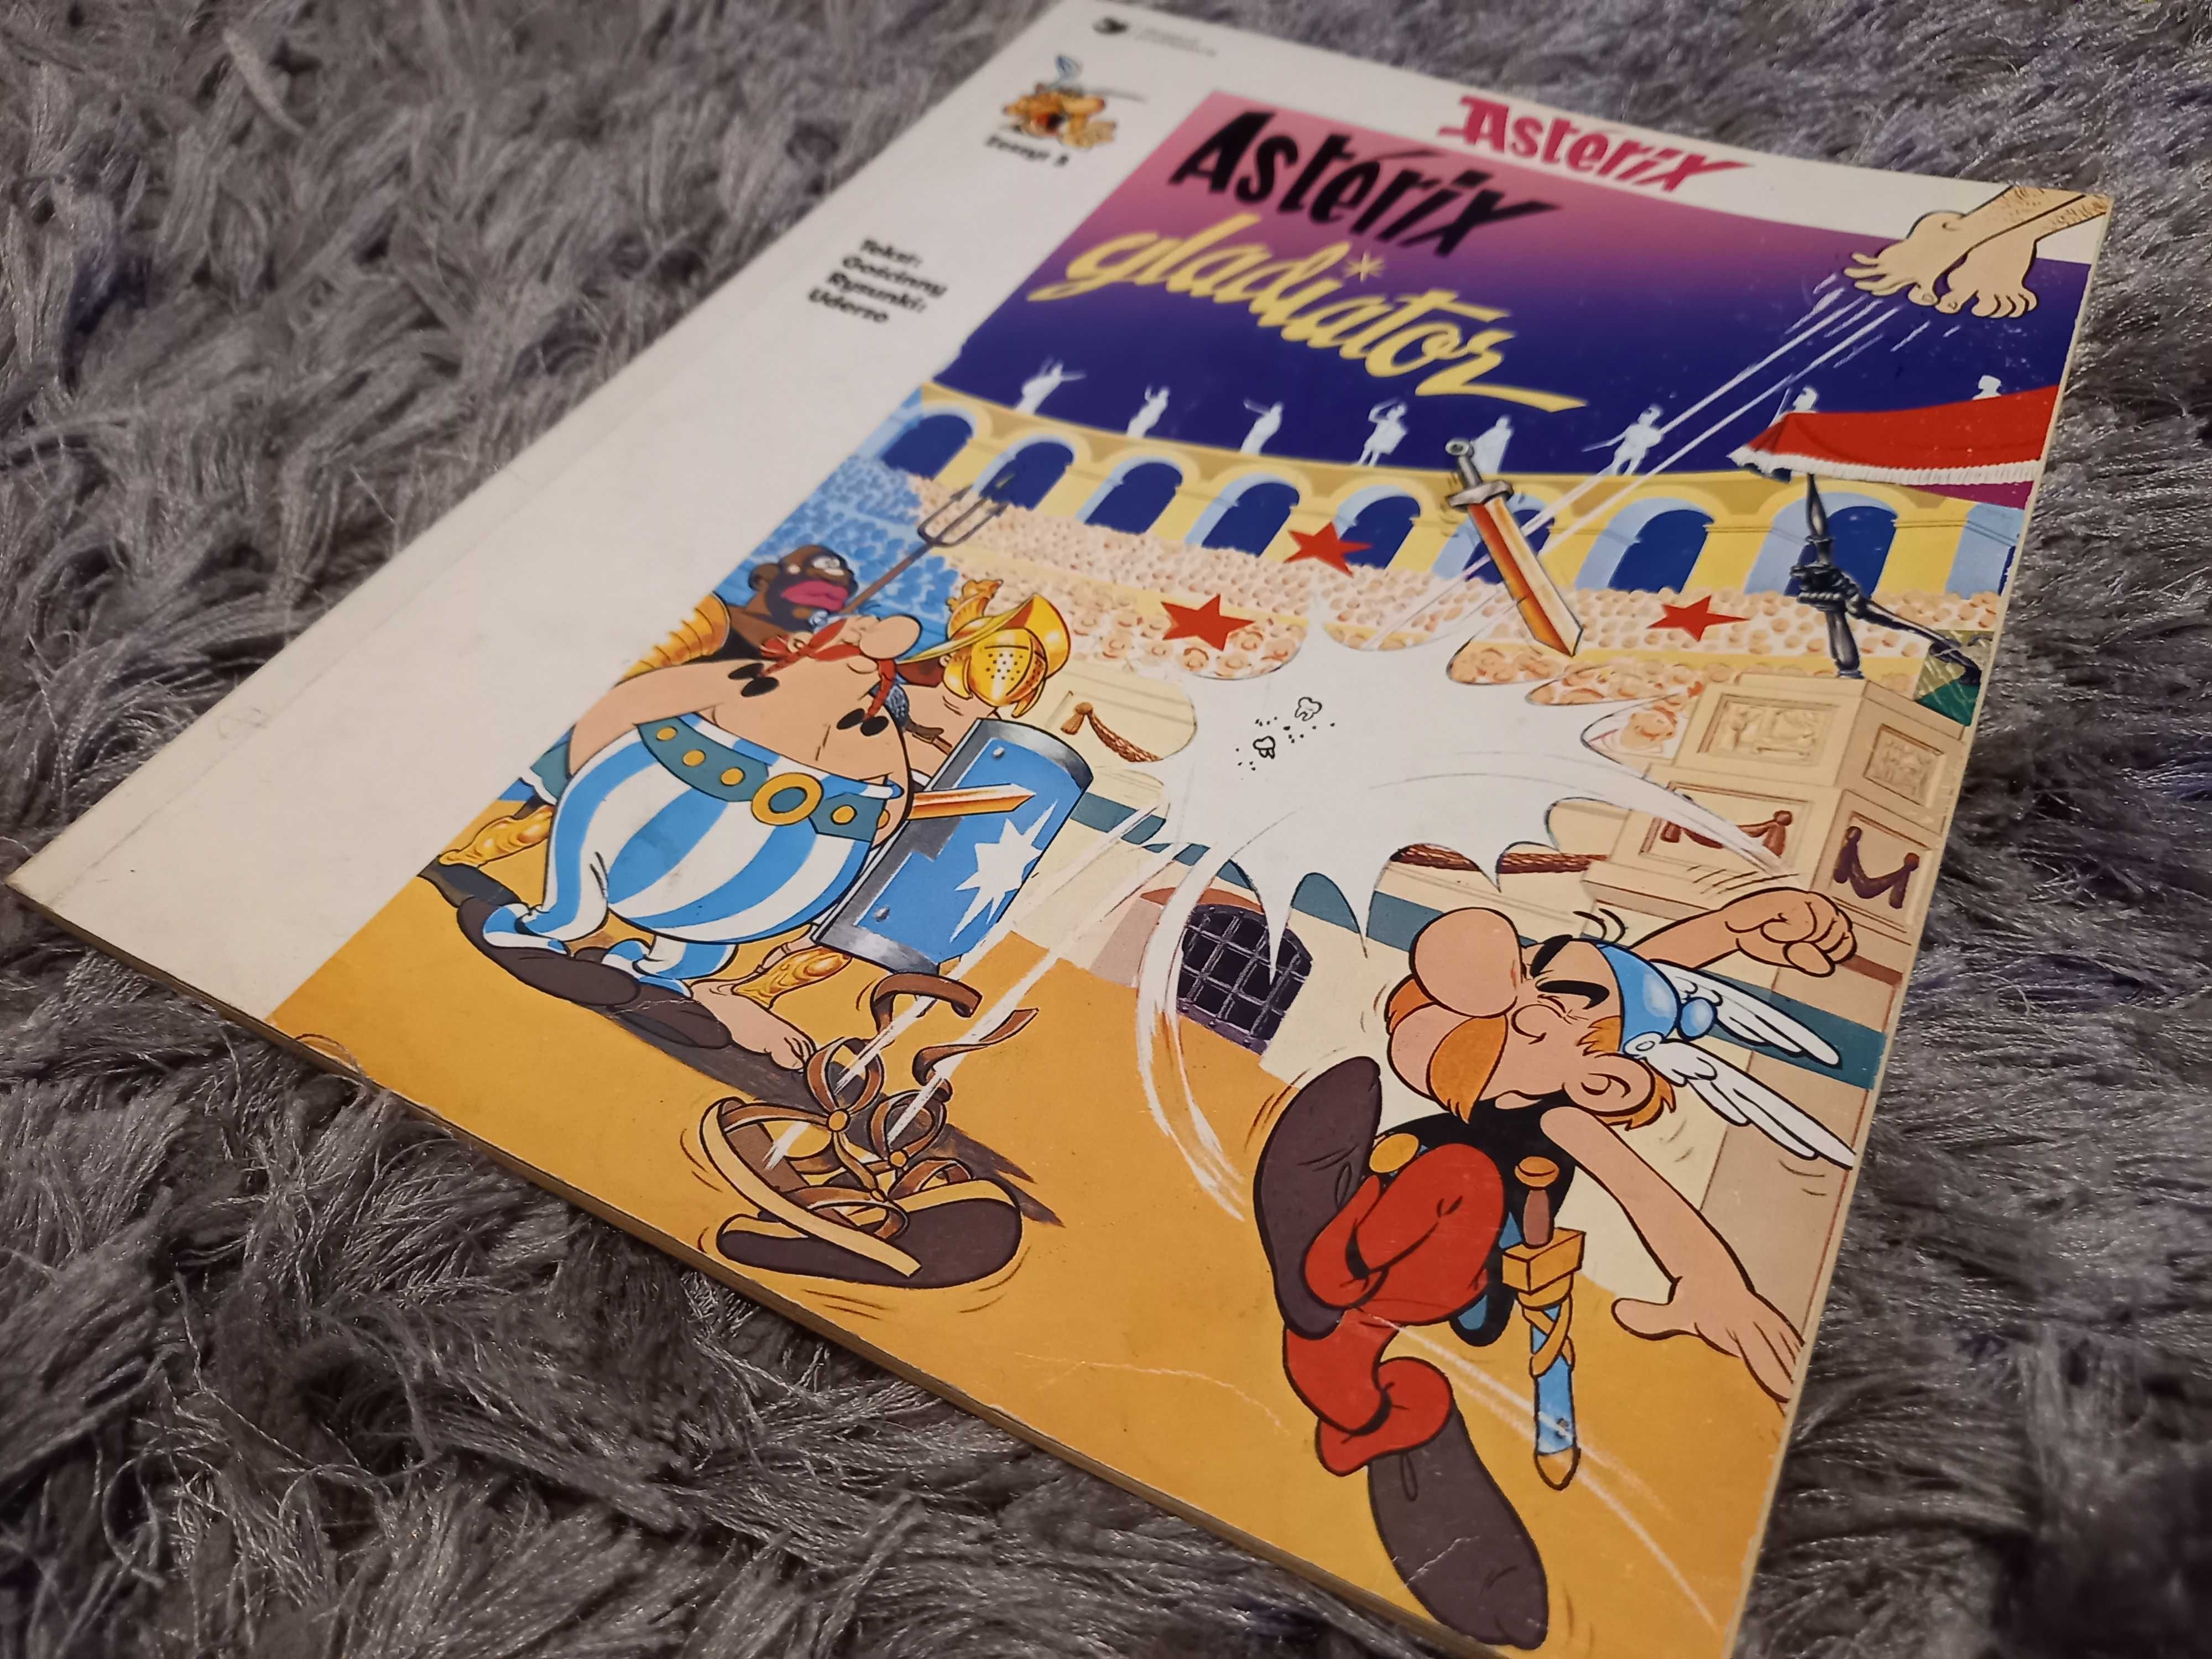 Sprzedam komiks :Asterix gladiator" zeszyt 3